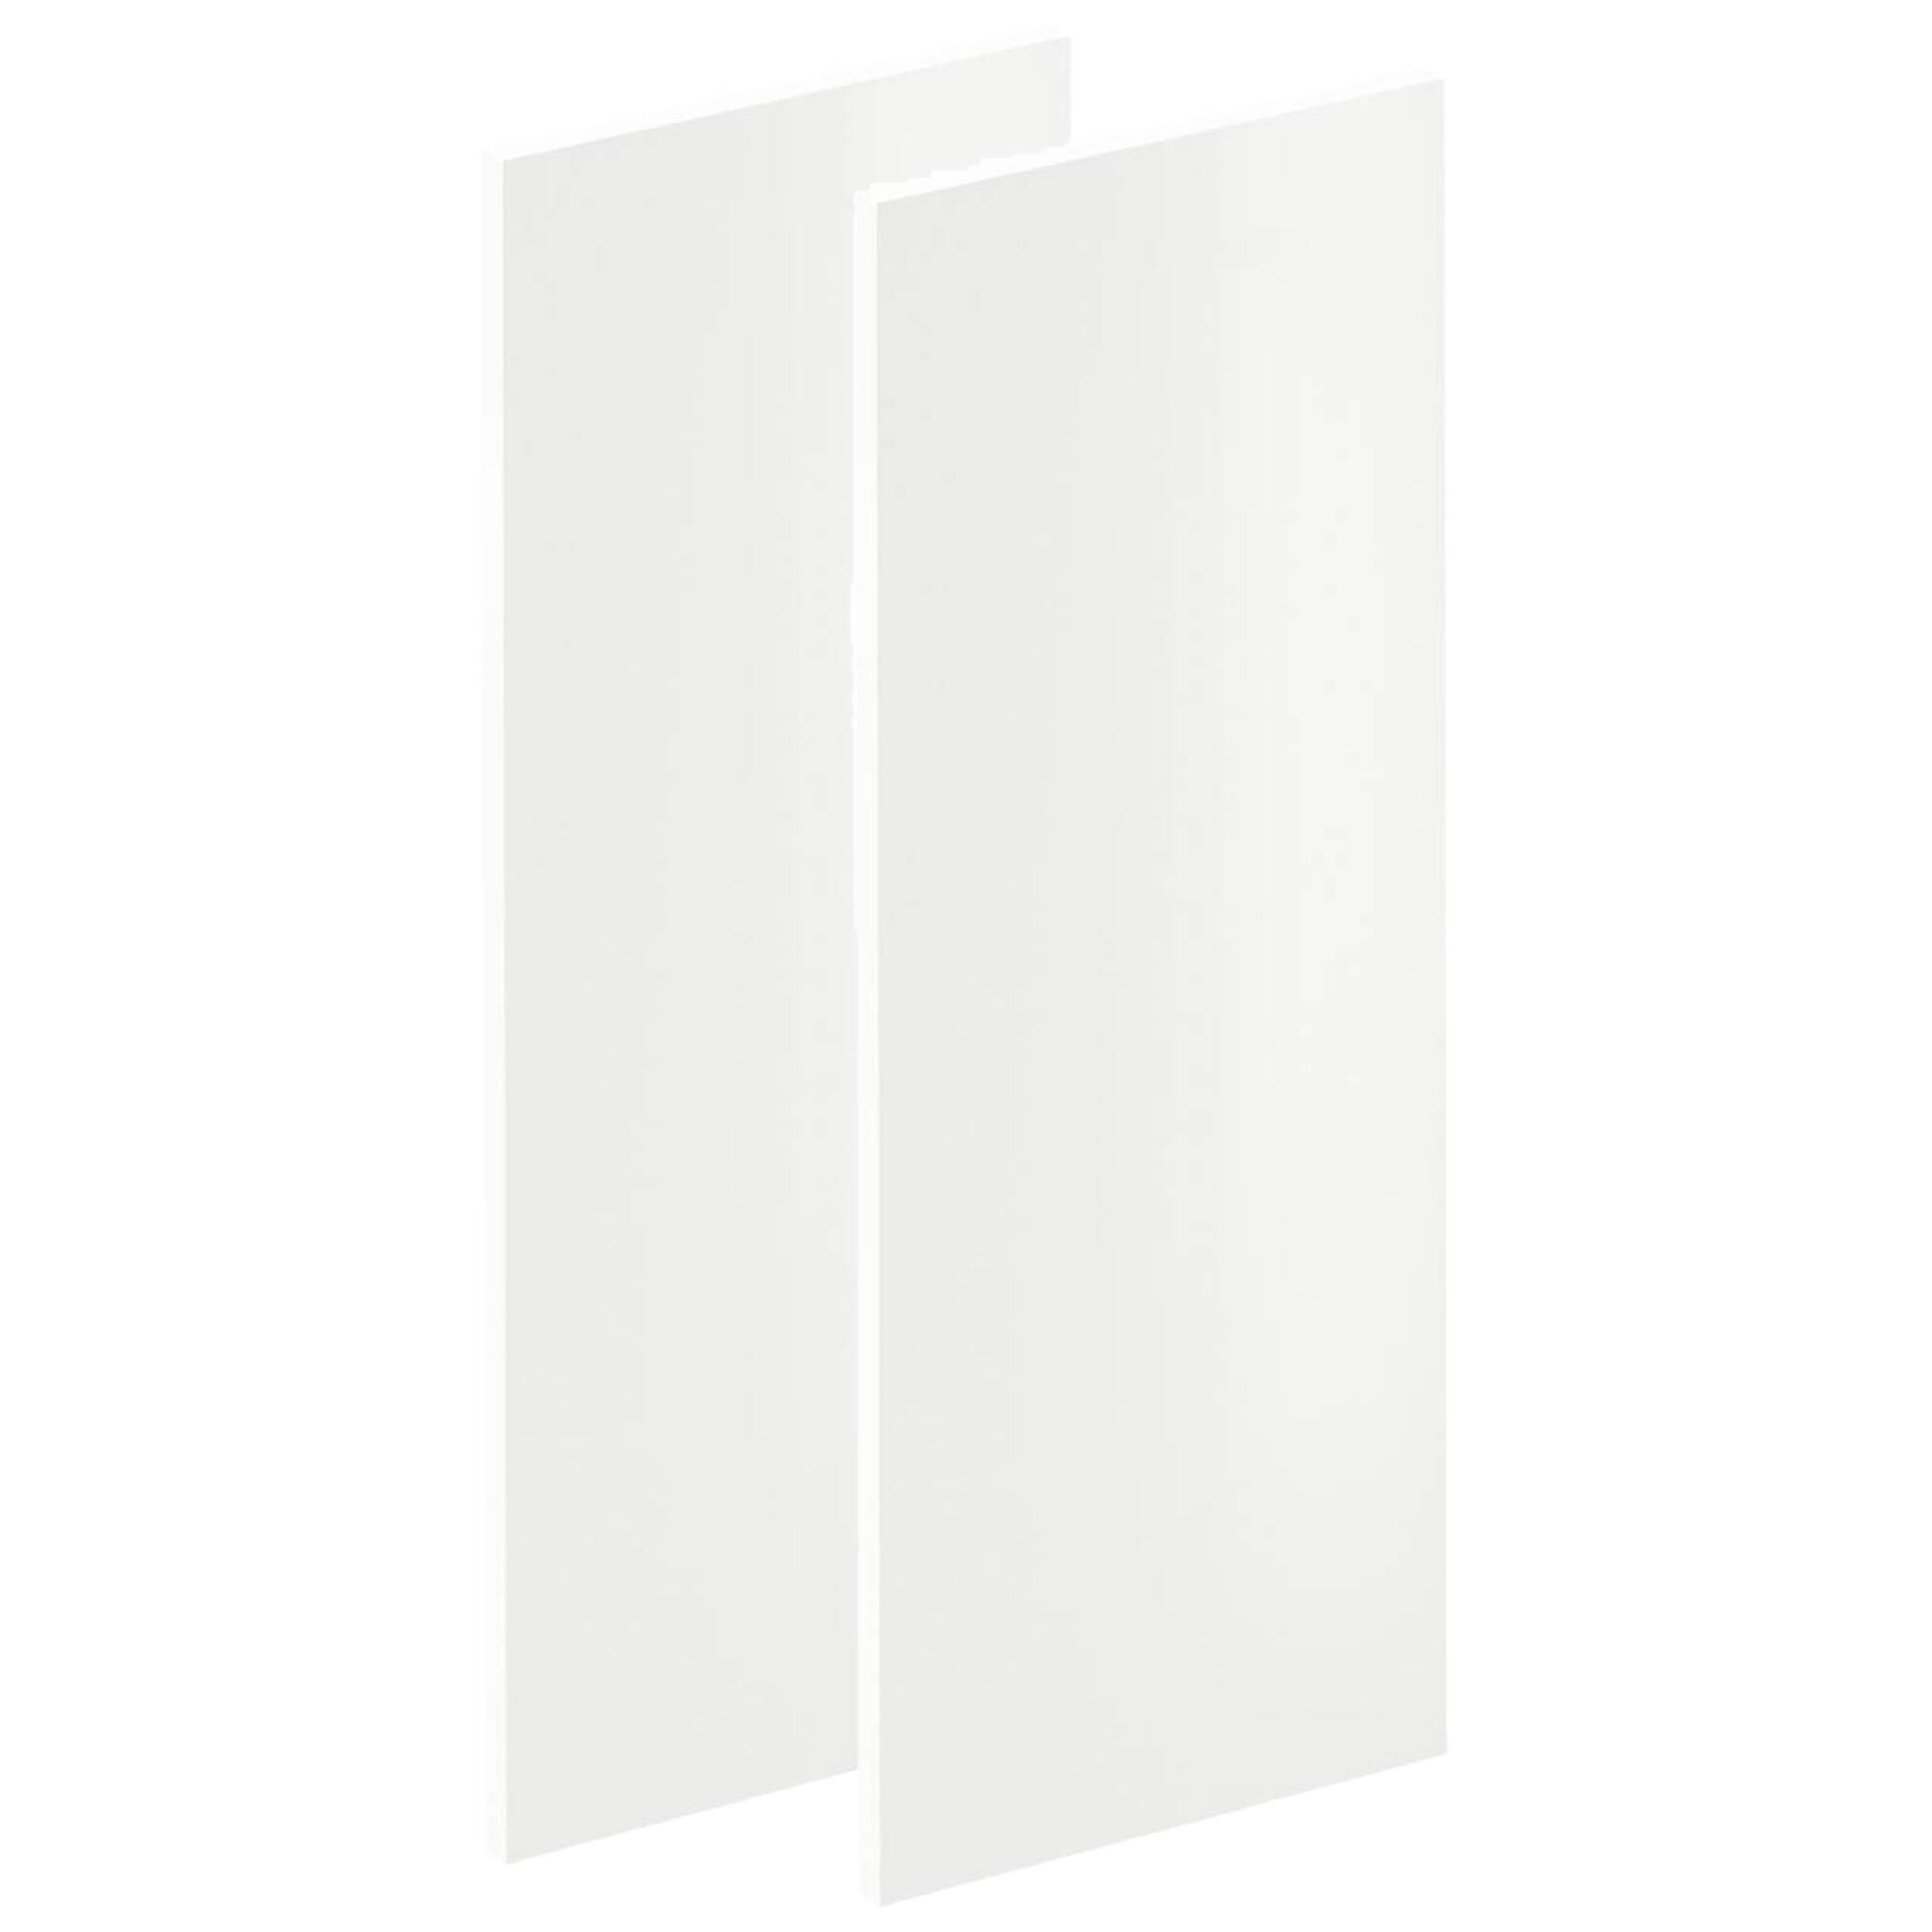 Lote de 2 puertas mueble de cocina sevilla blanco brillo h 76.8 x l 29.7 cm